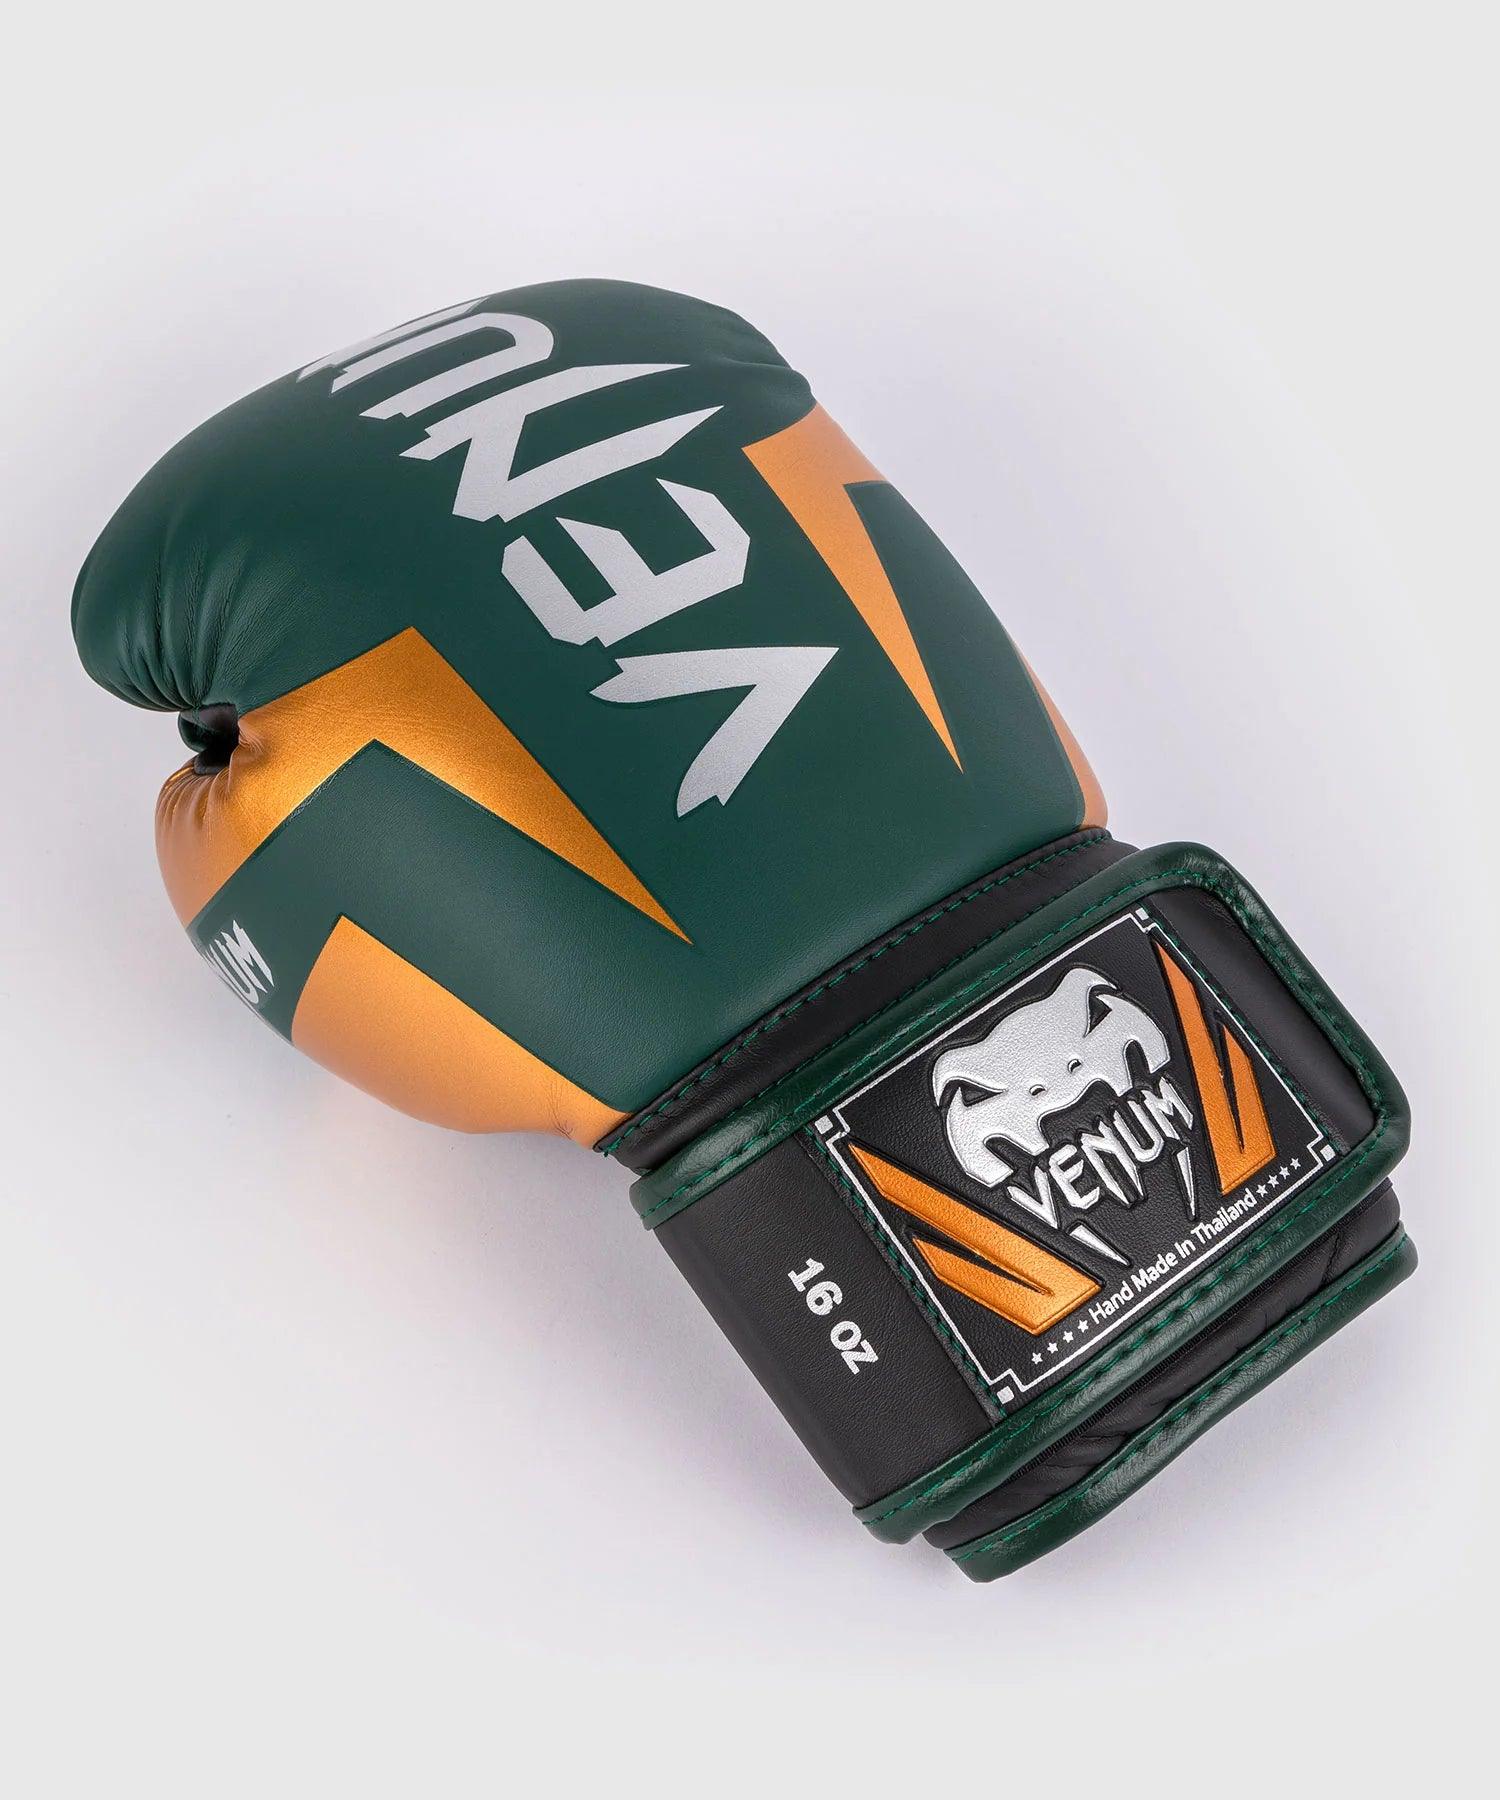 Gants de boxe Venum Elite - Boutique des Arts Martiaux et Sports de Combat